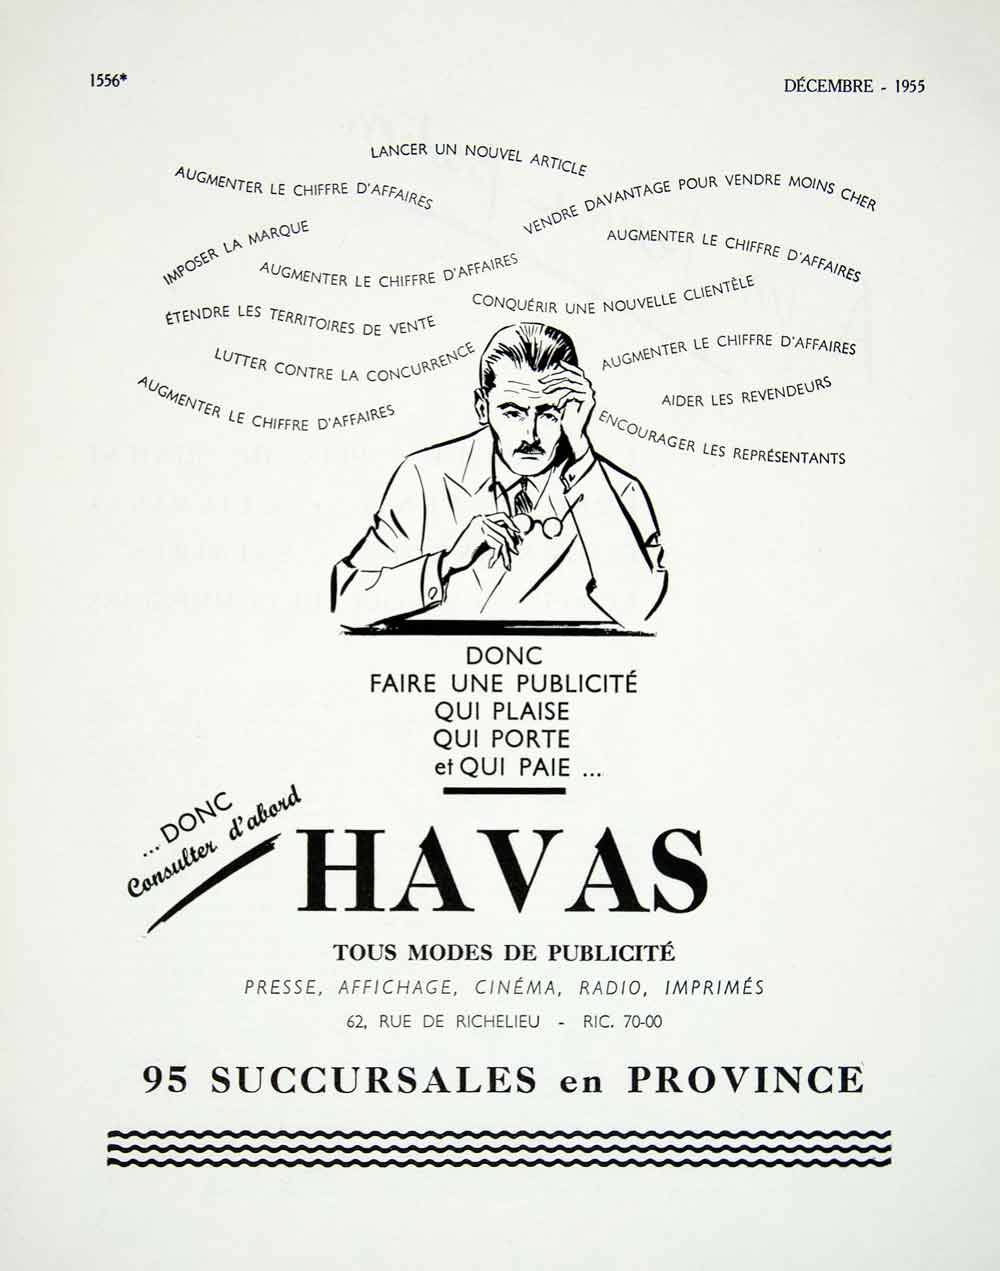 1955 Ad Havas Advertising French Marketing 95 Succursales en Province VEN6